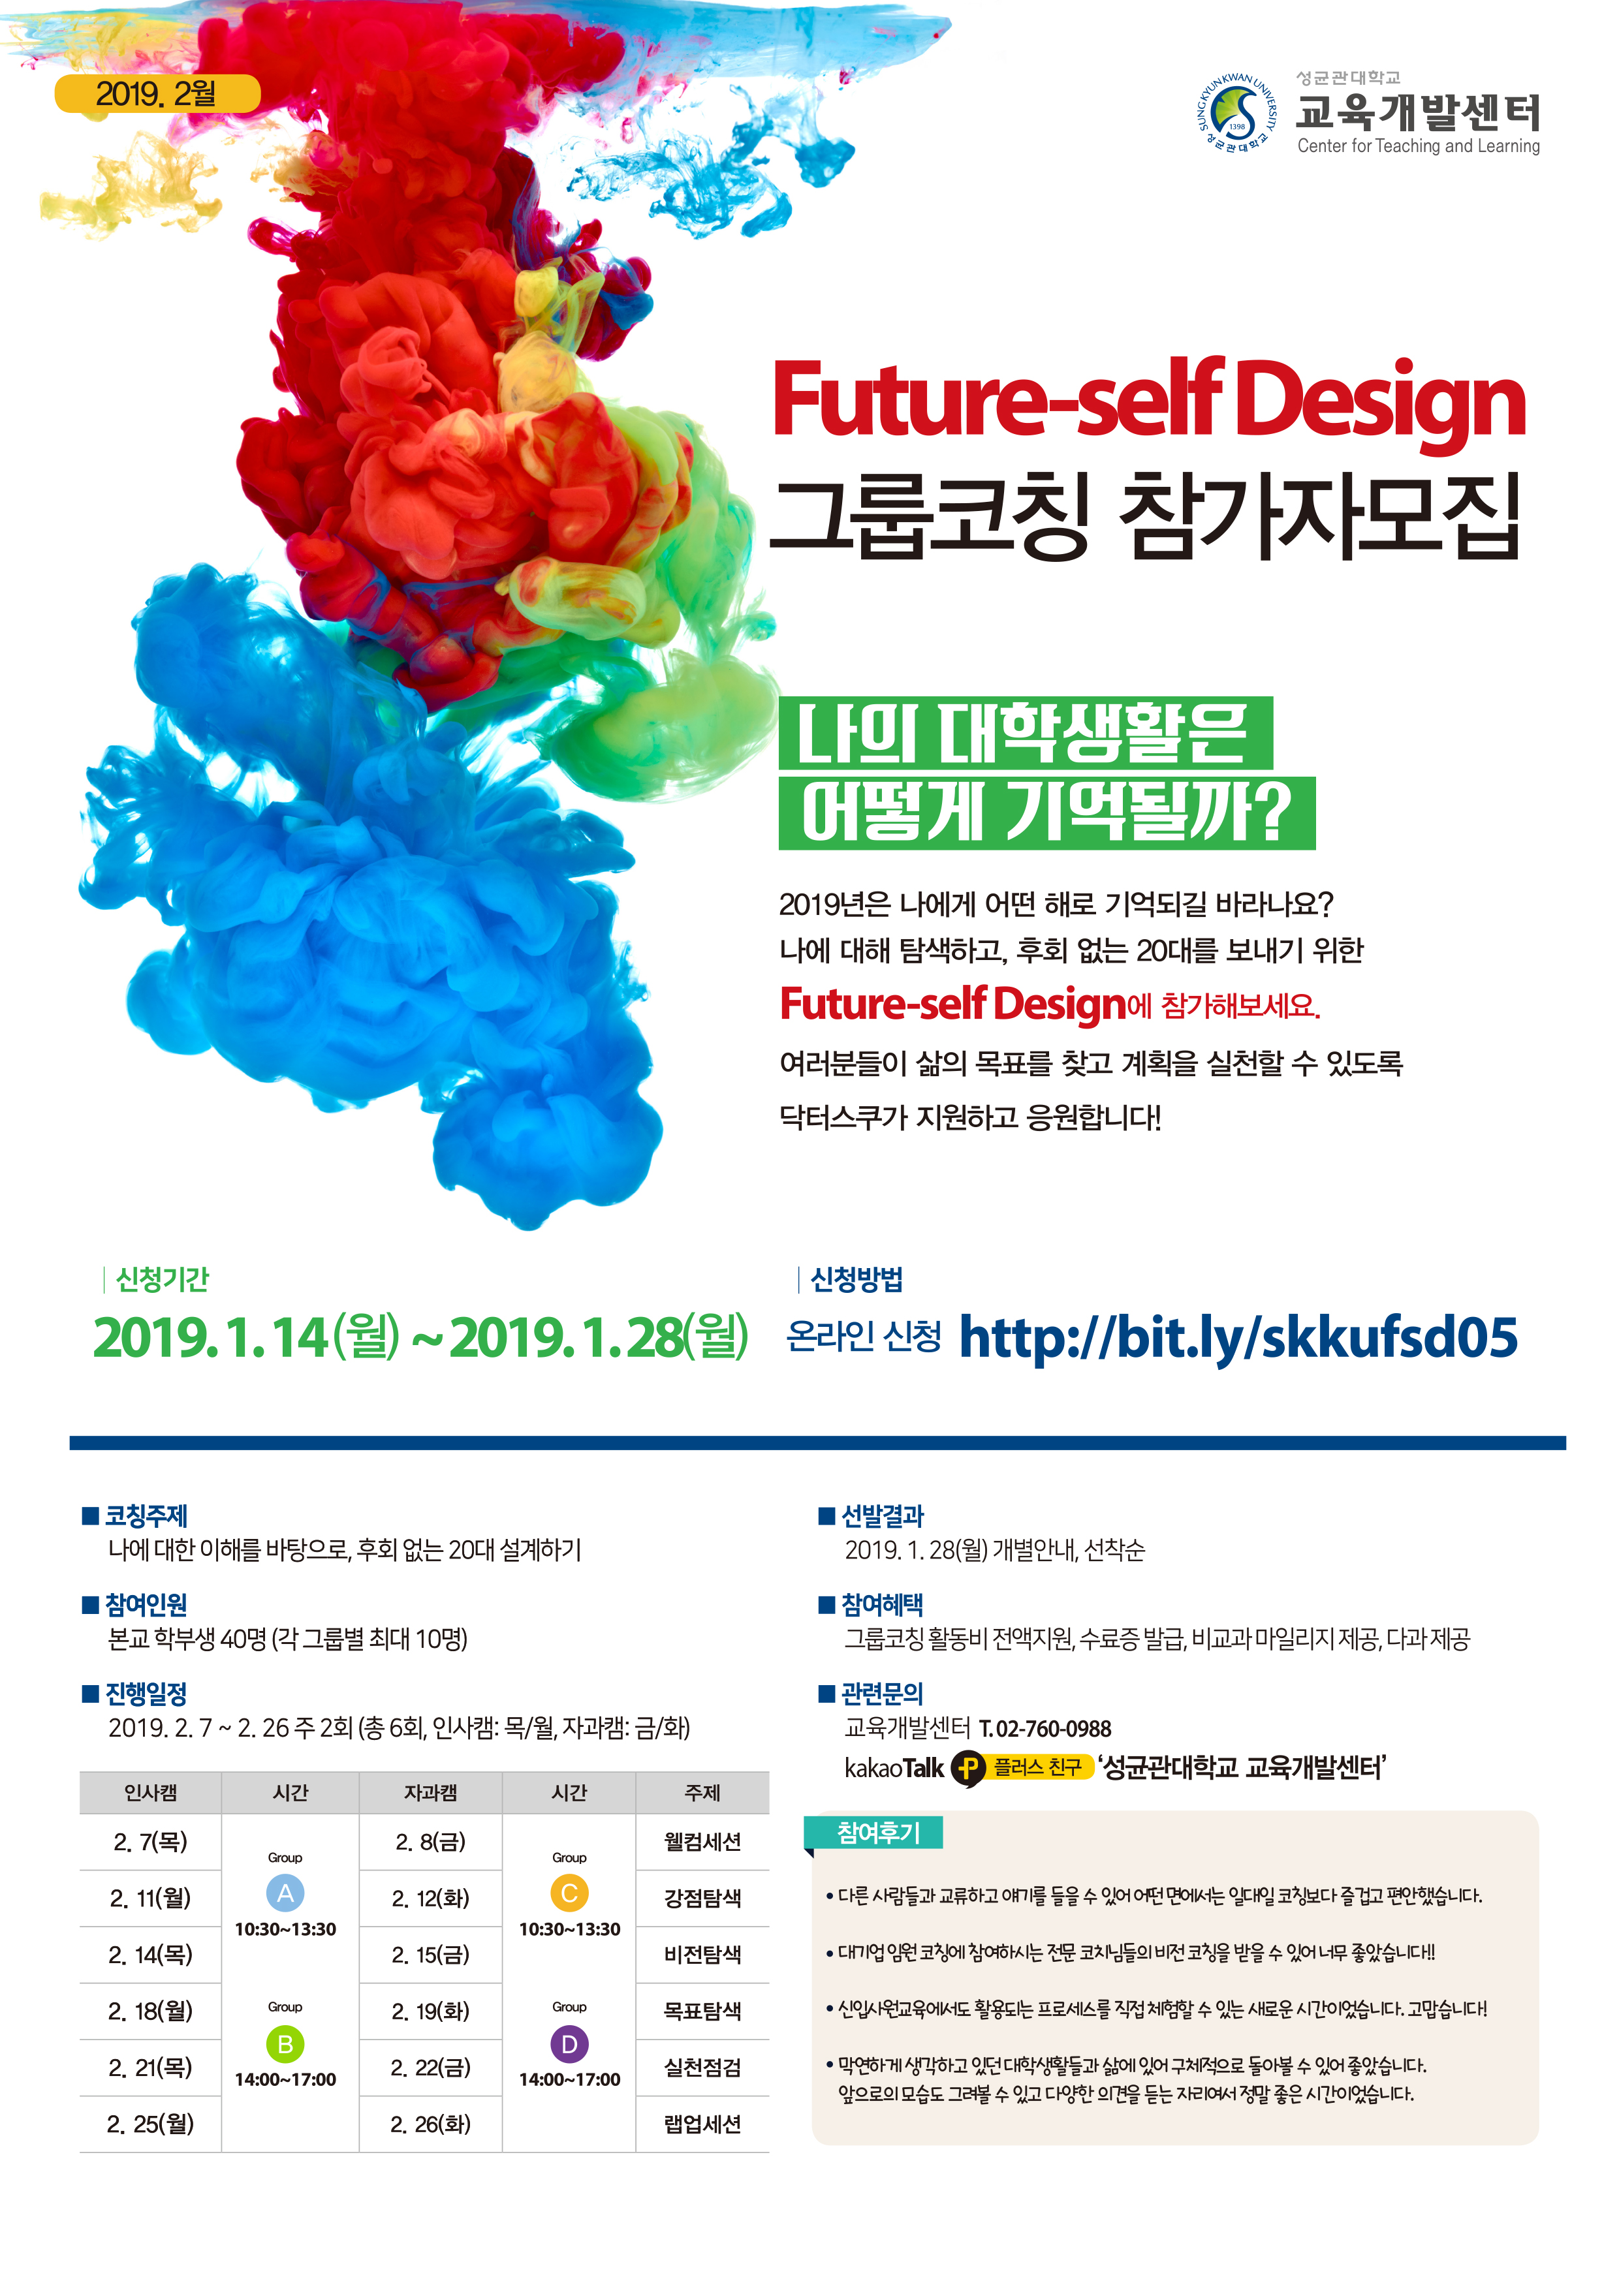 2018학년도 2학기 Future-self Design 5기 모집